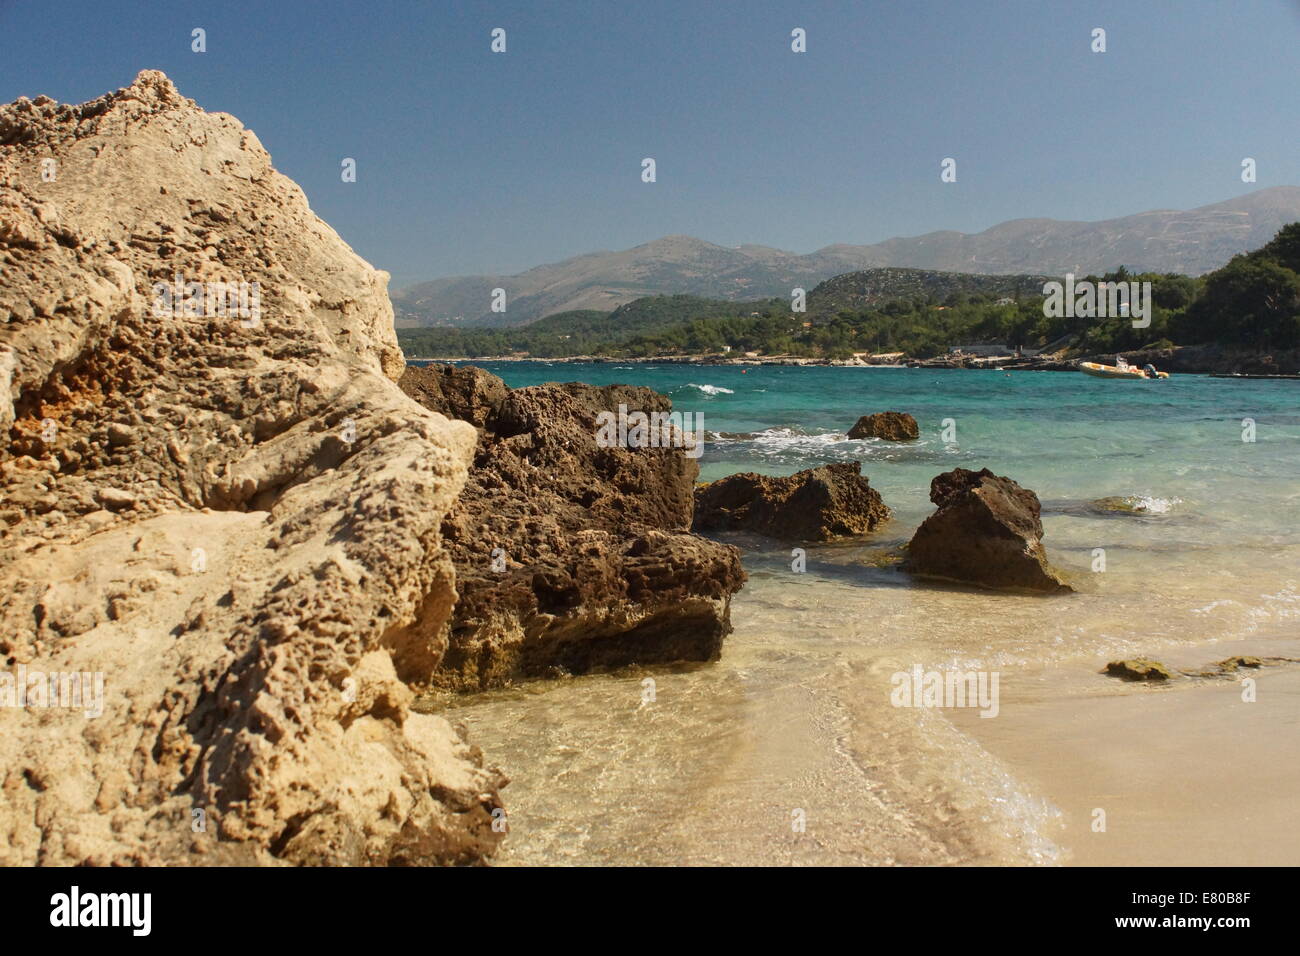 Scène côtière, les îles grecques, la mer bleue, sable, plage, montagnes, Grèce Banque D'Images